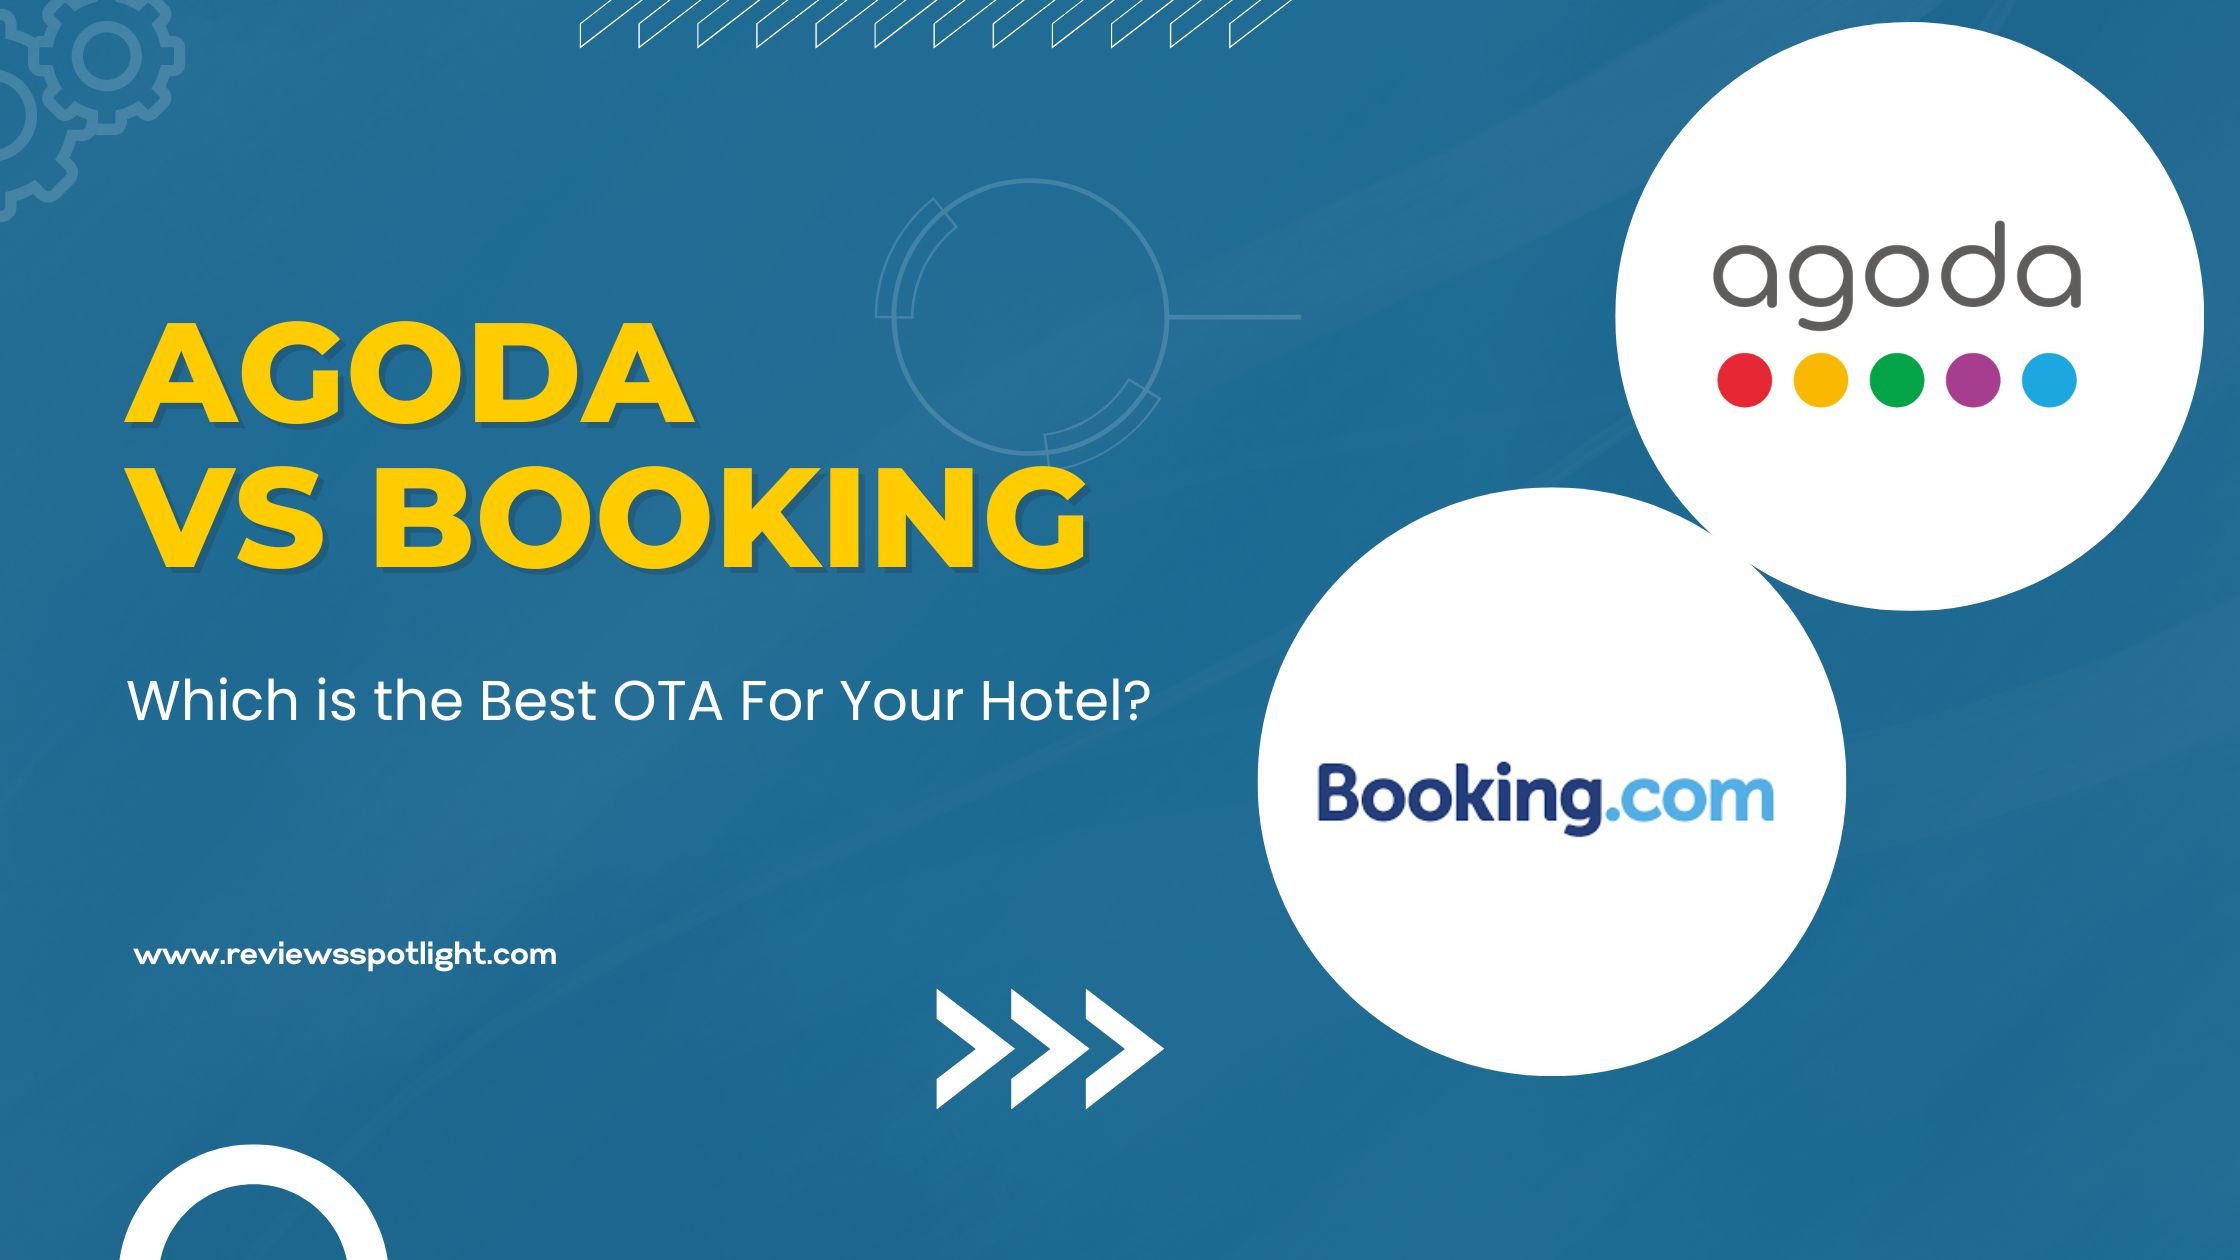 Agoda vs Booking.com